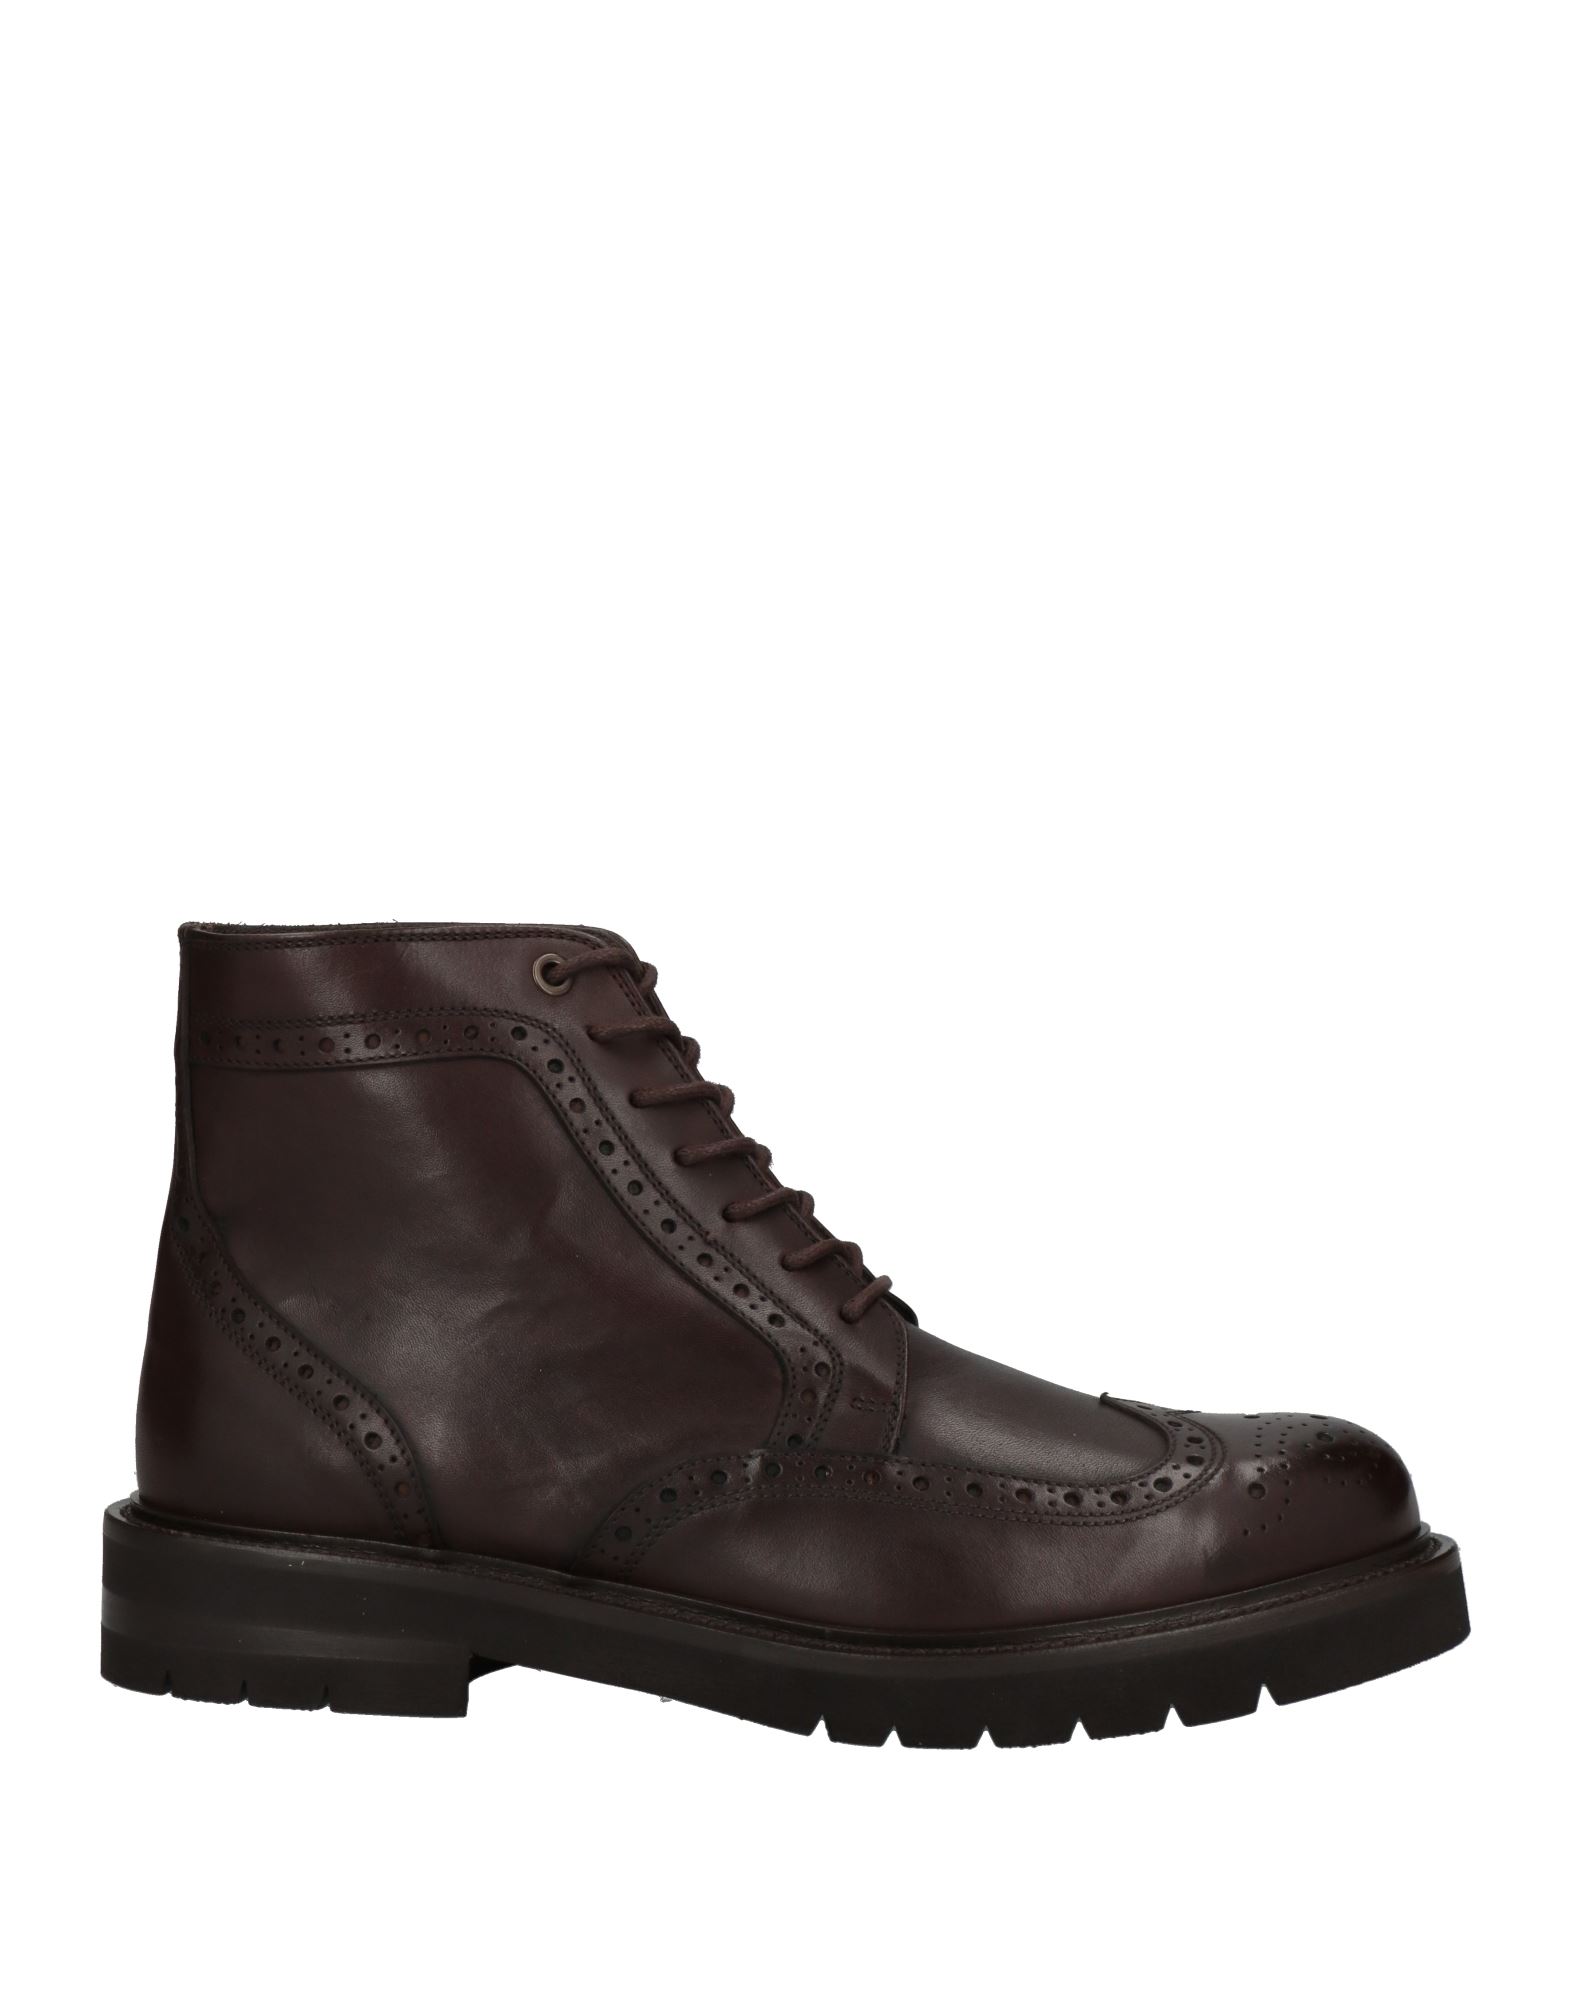 Shop Baldinini Man Ankle Boots Dark Brown Size 7 Calfskin